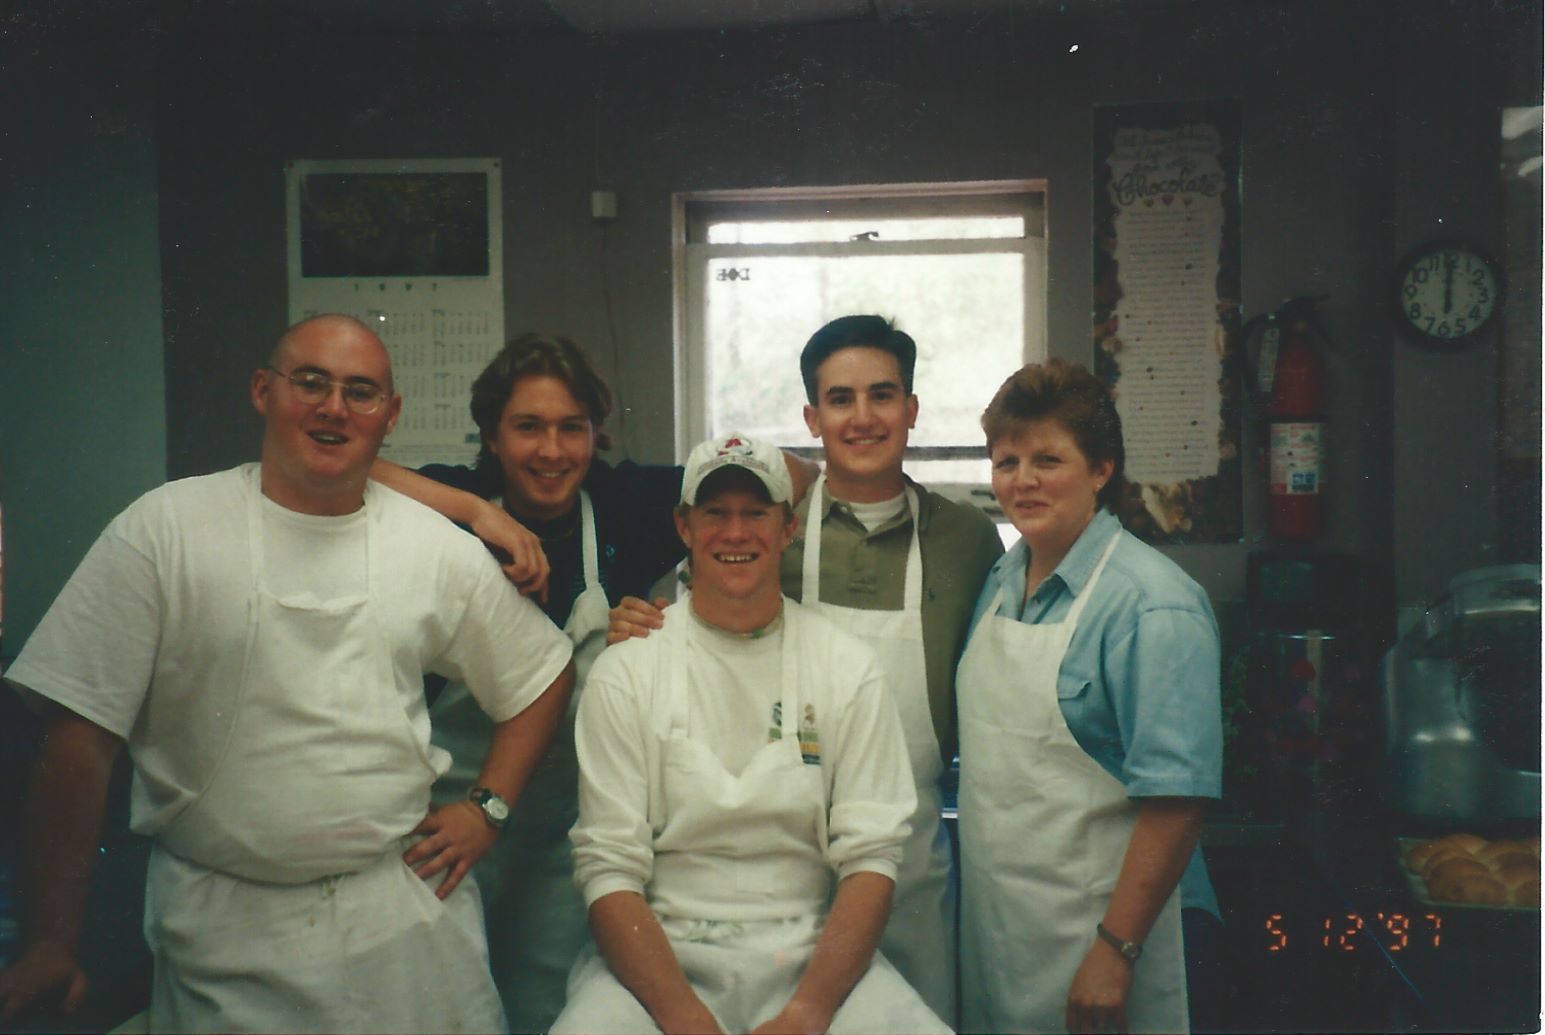 1997 - Rita's first SigEp Kitchen Crew